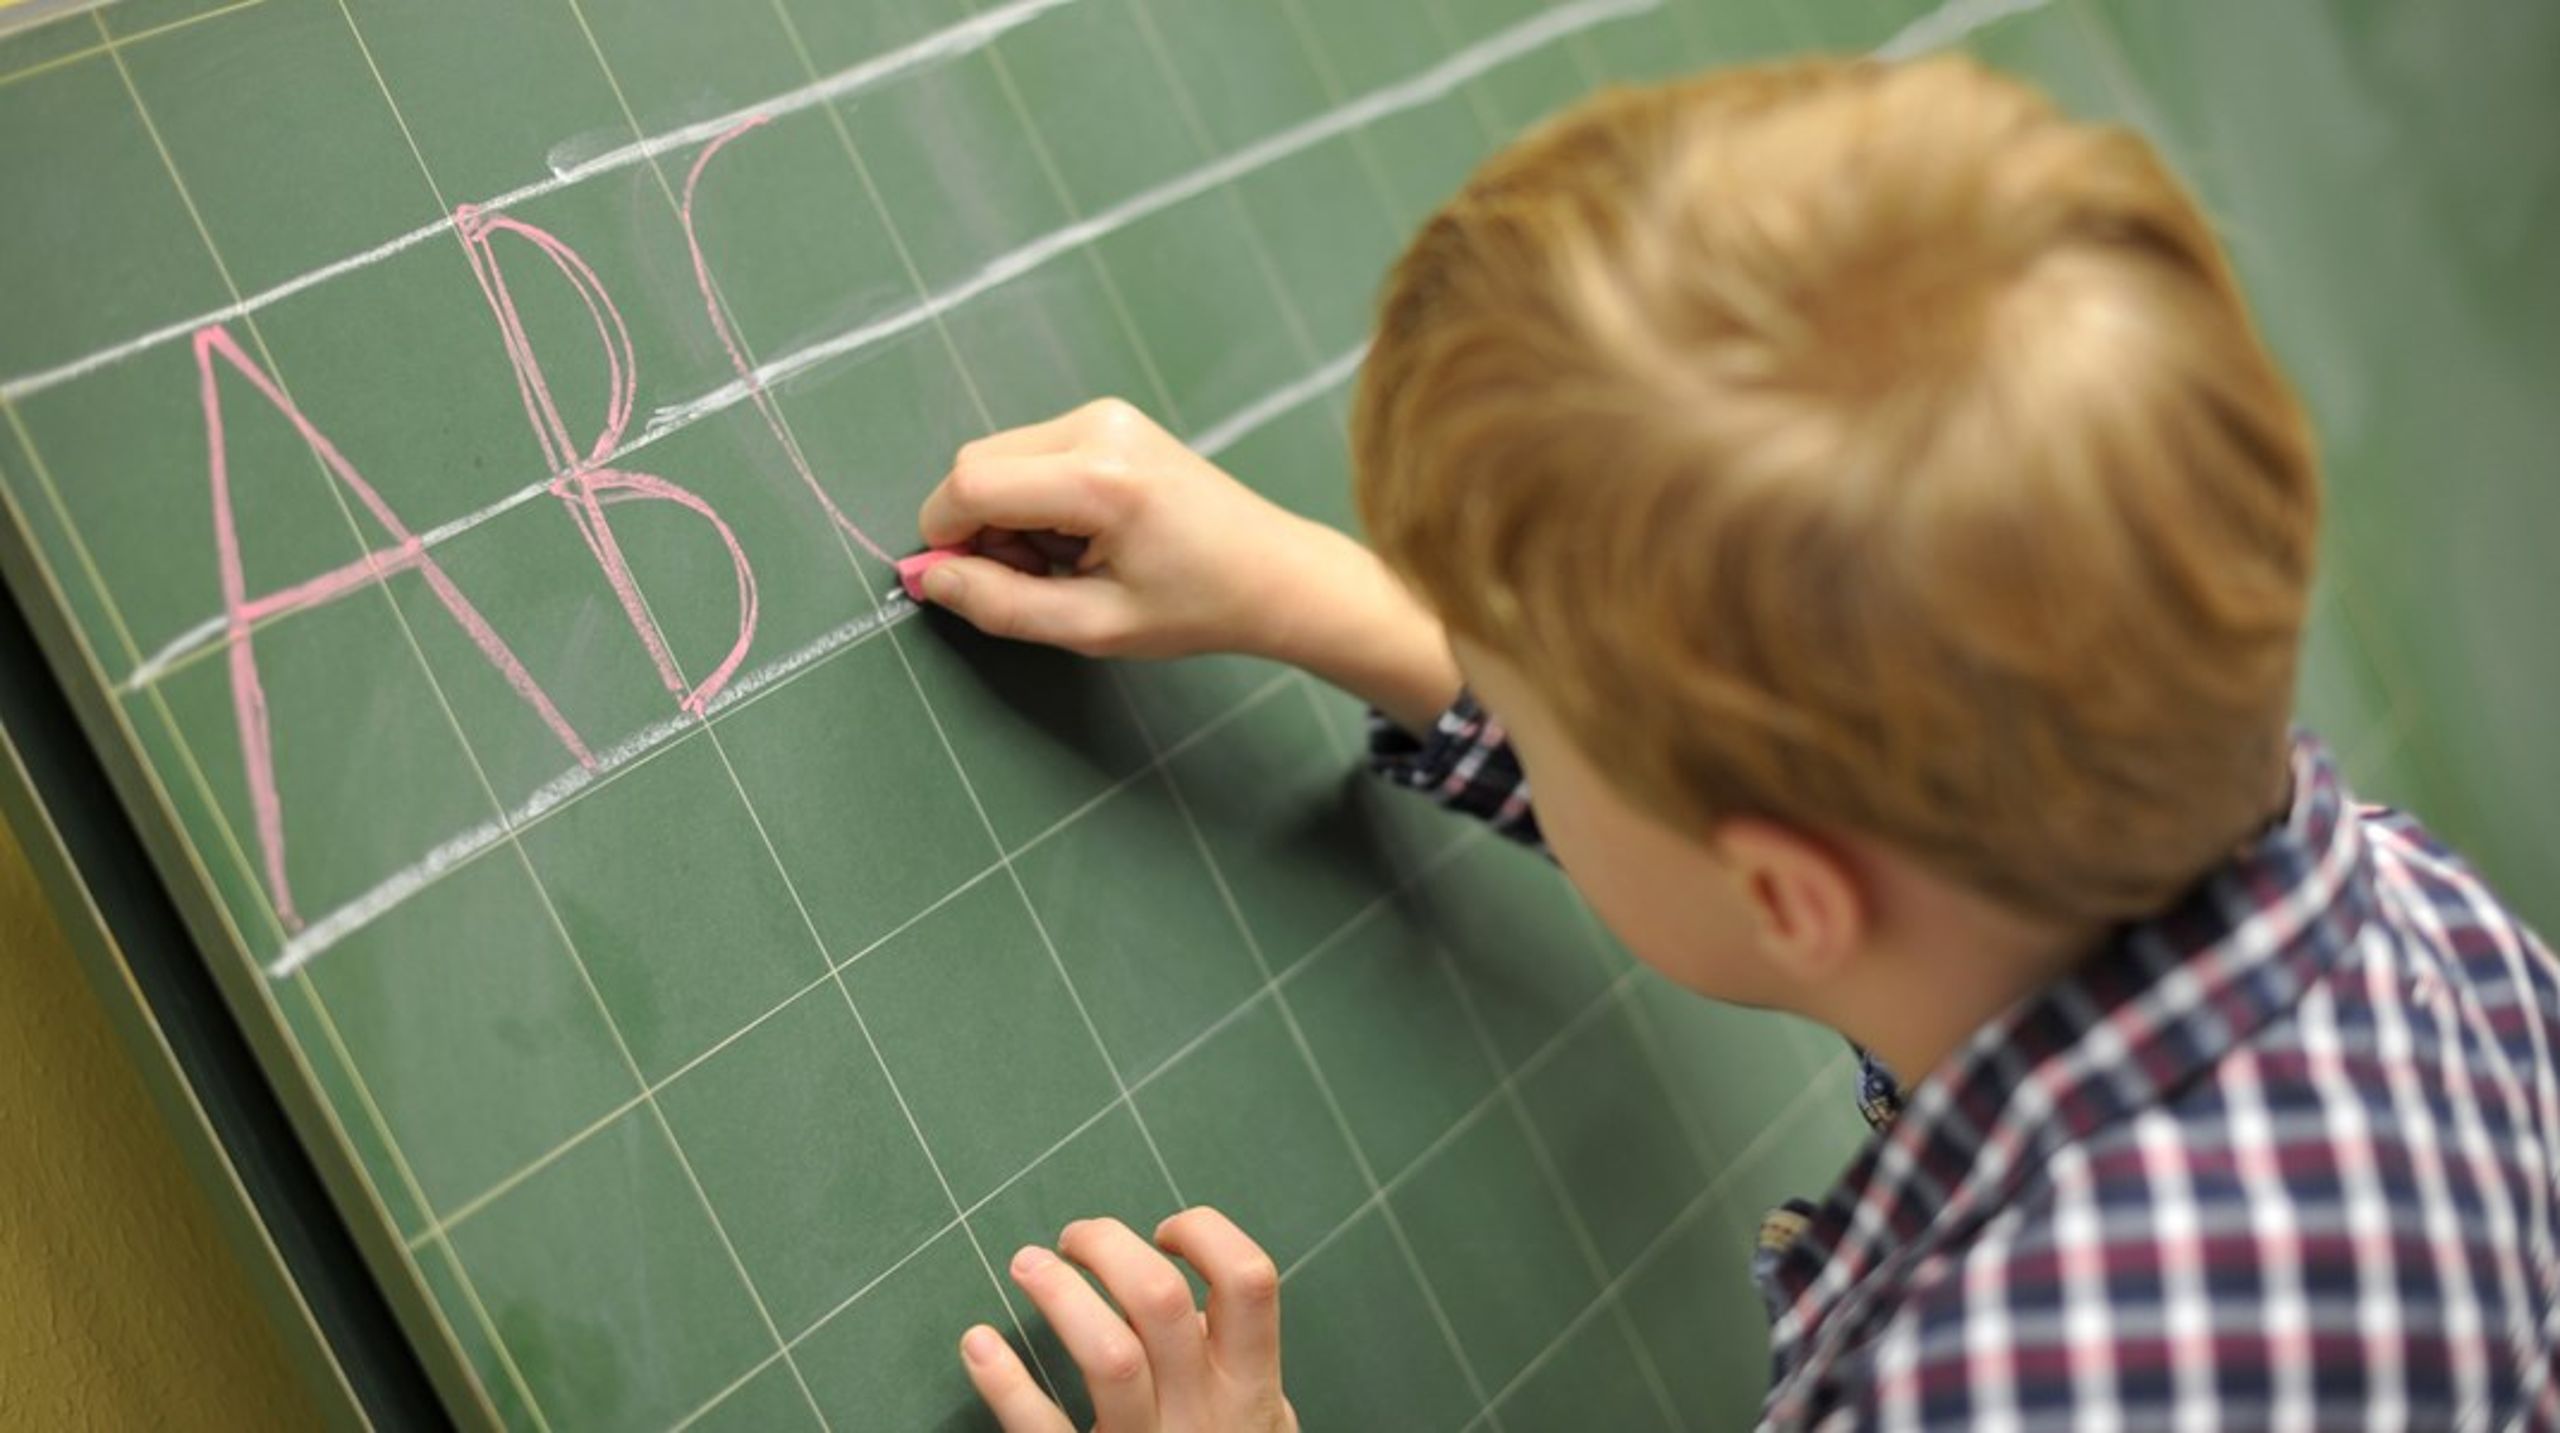 Bør bokstavene "EU" og "EØS" skrives oftere på tavlen i klasserommene til&nbsp;barn og unge?